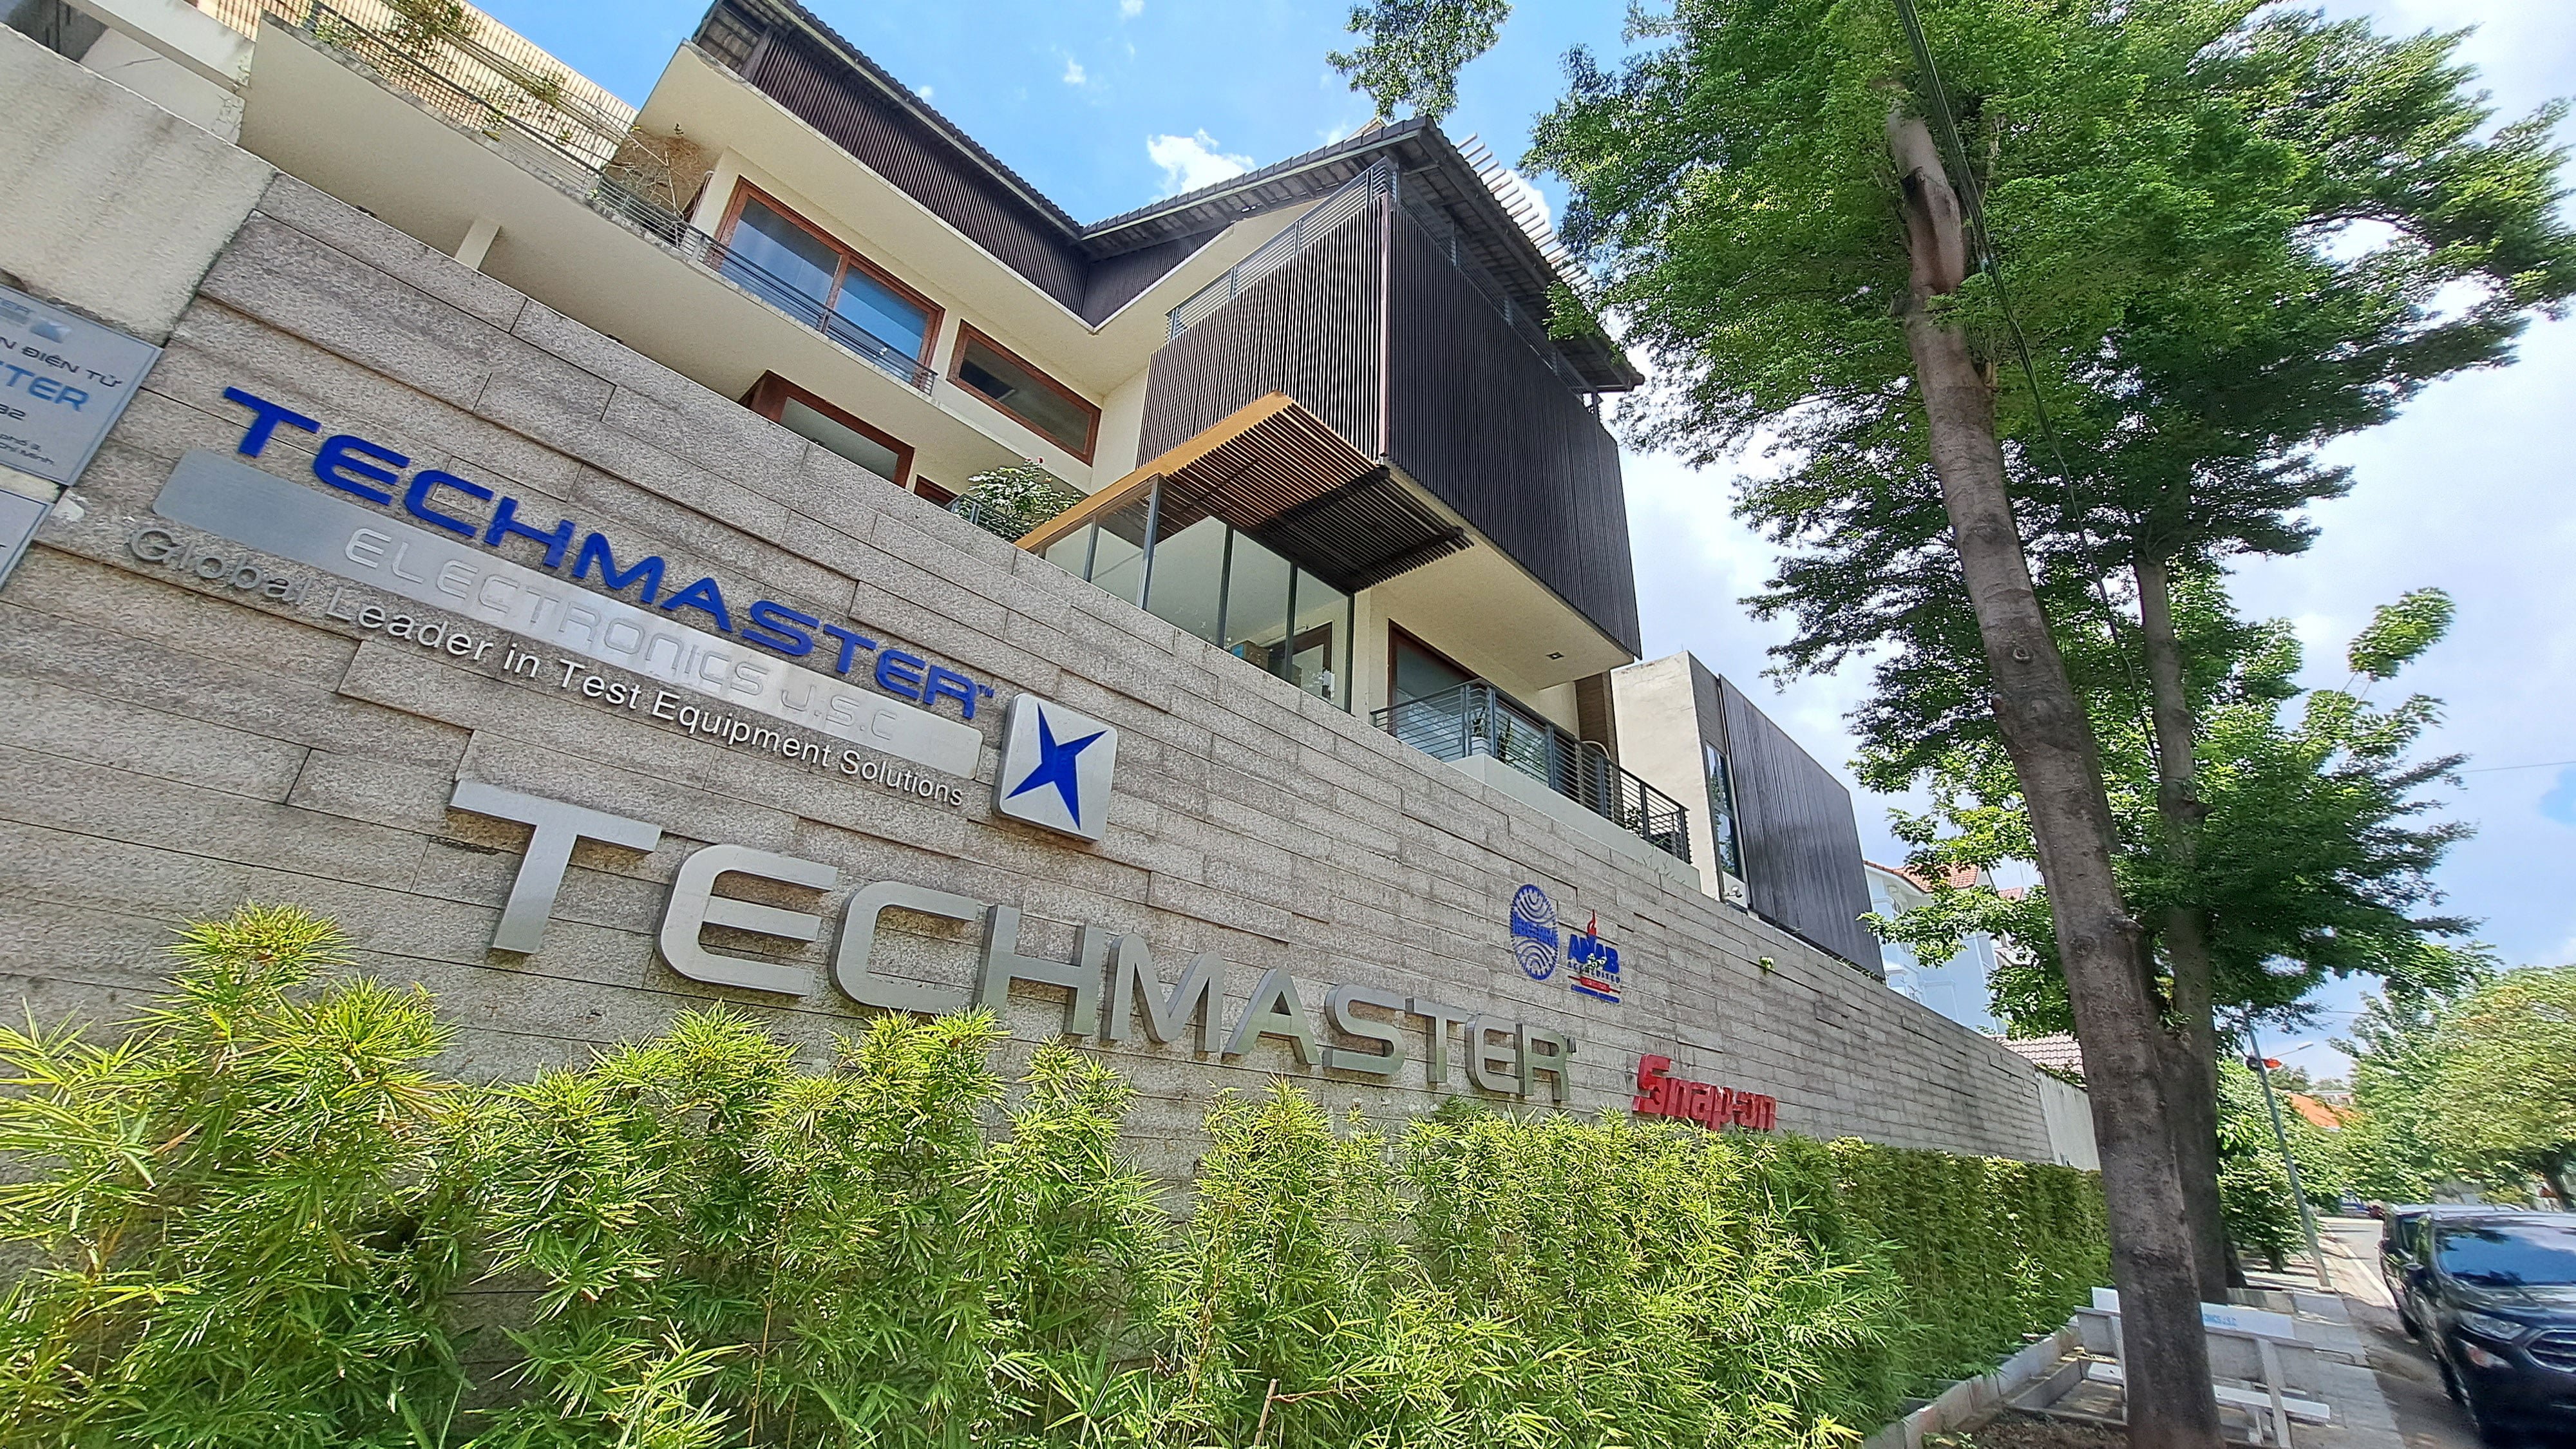 Trụ sở của Techmaster tại TP.HCM